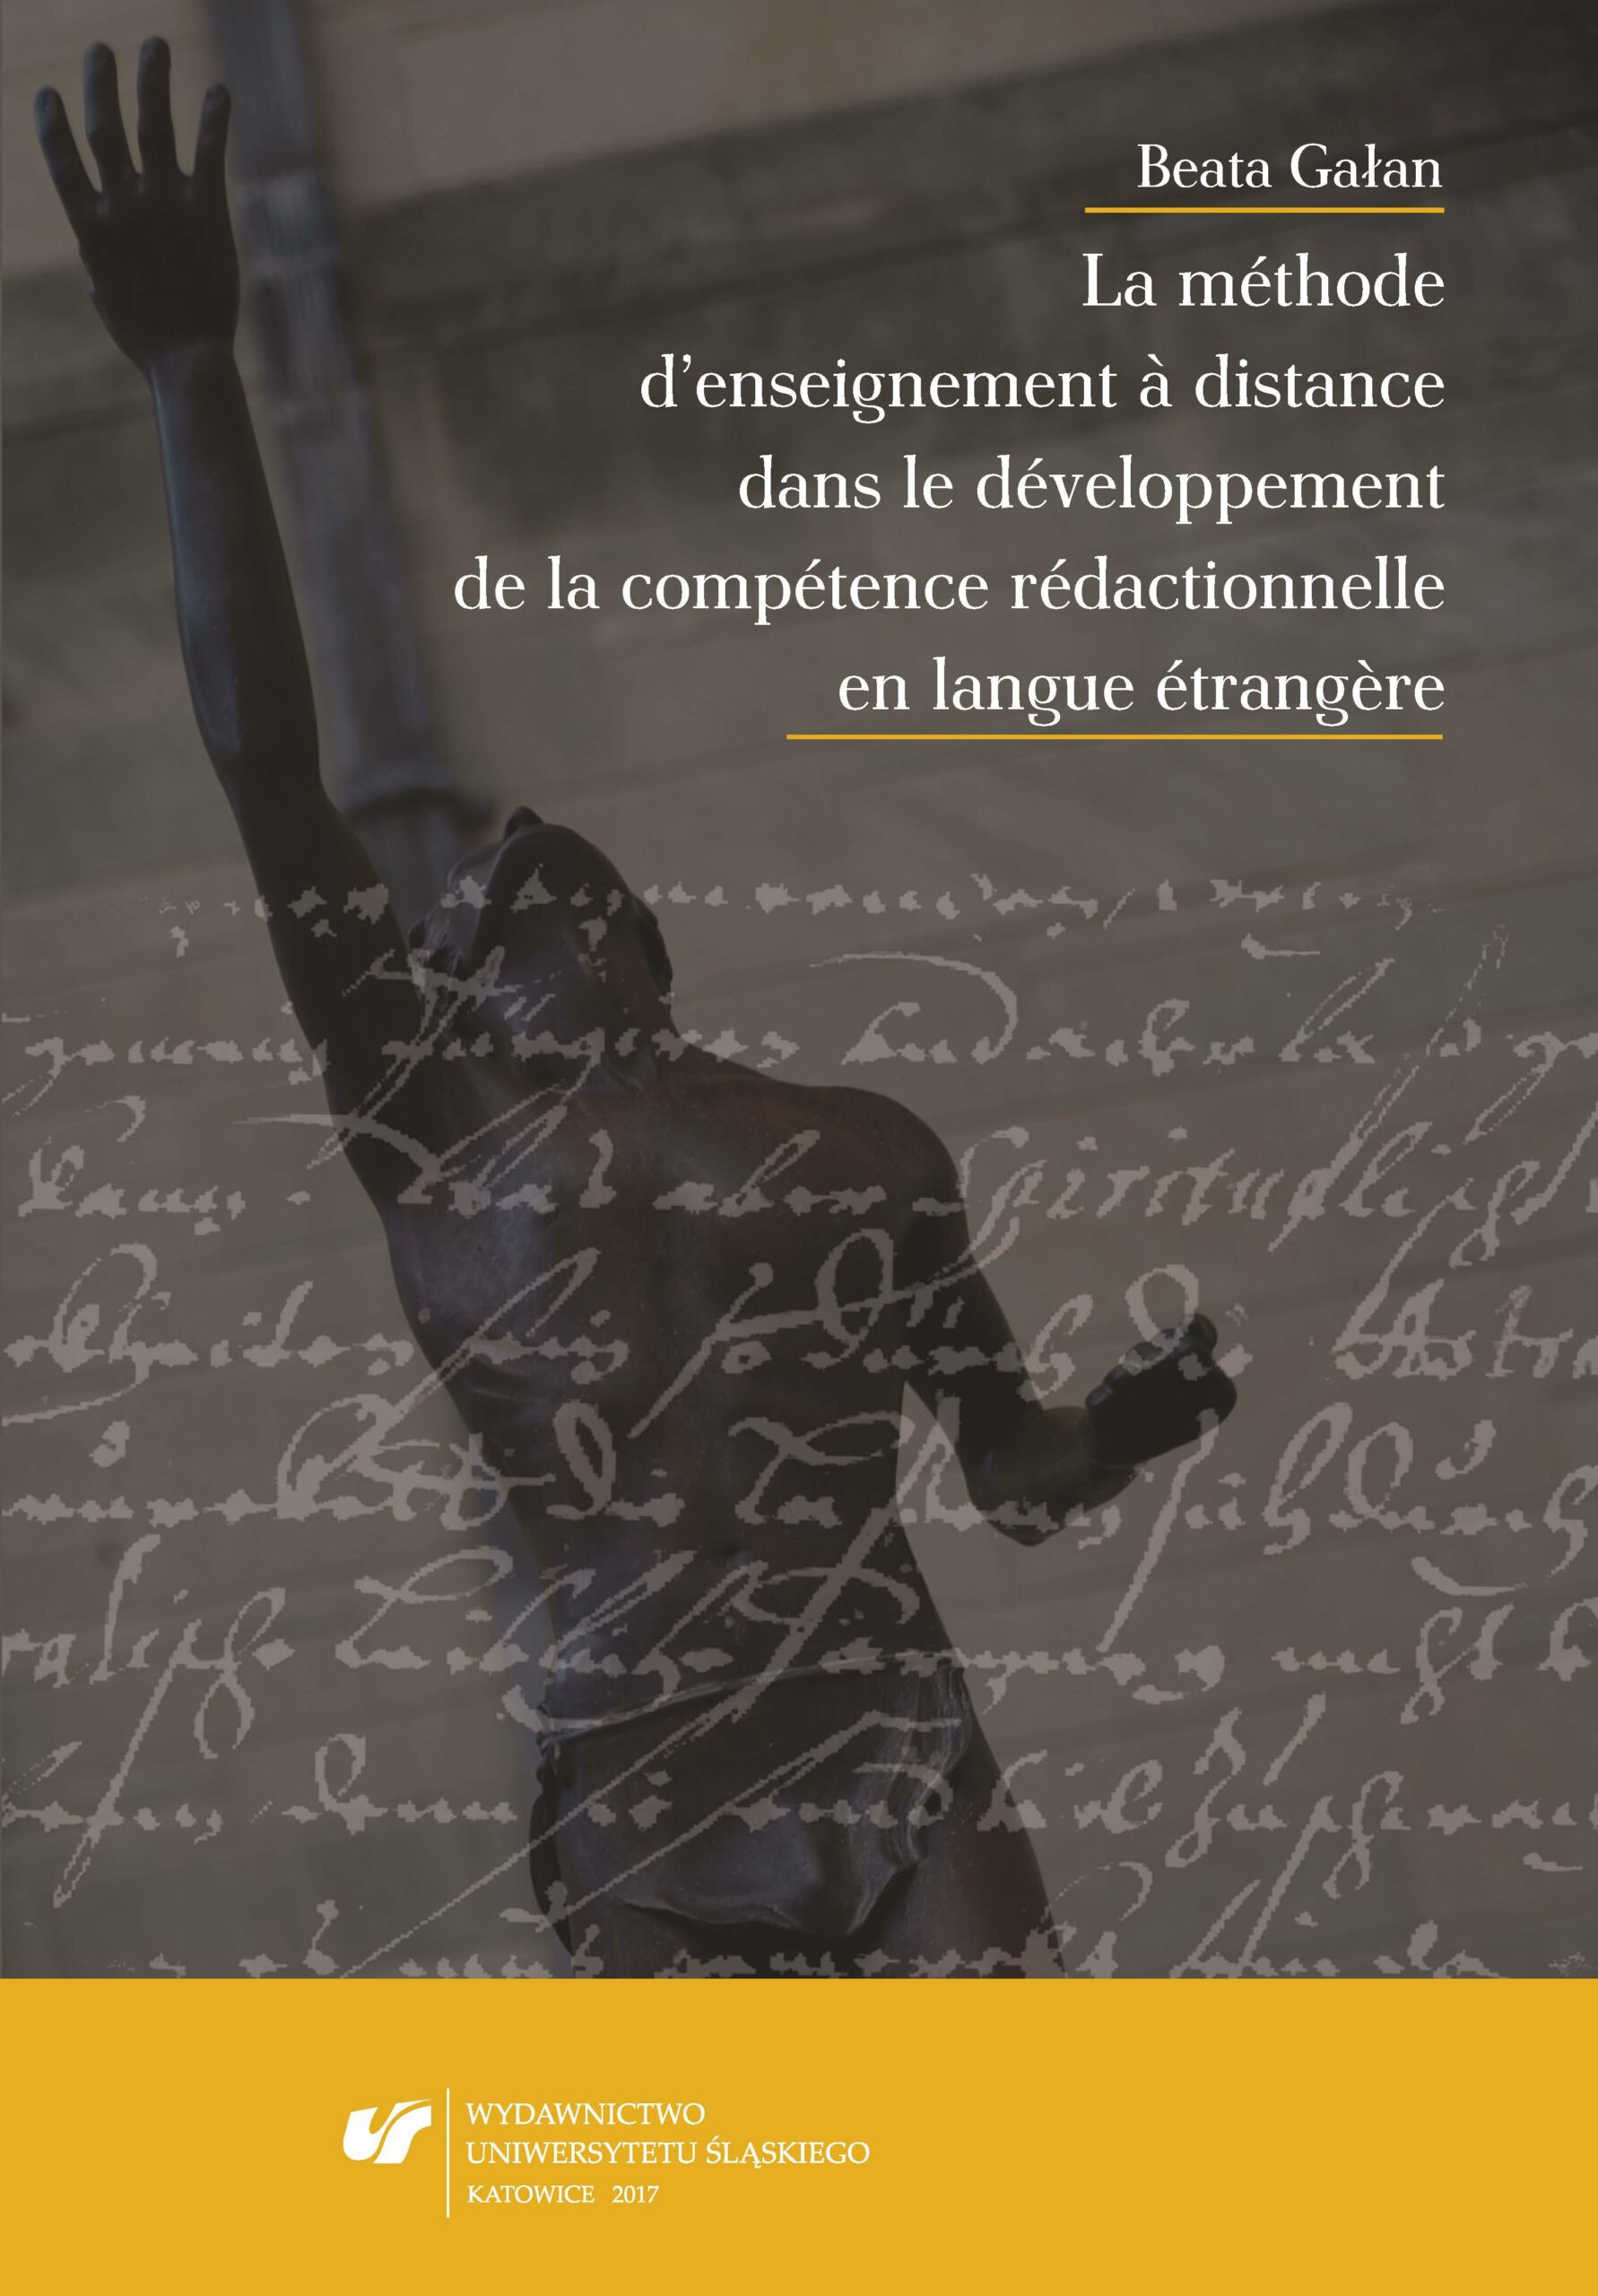 okładka książki Beata Gałan La méthode d’enseignement à distance dans le développement de la compétence rédactionnelle en langue étrangère